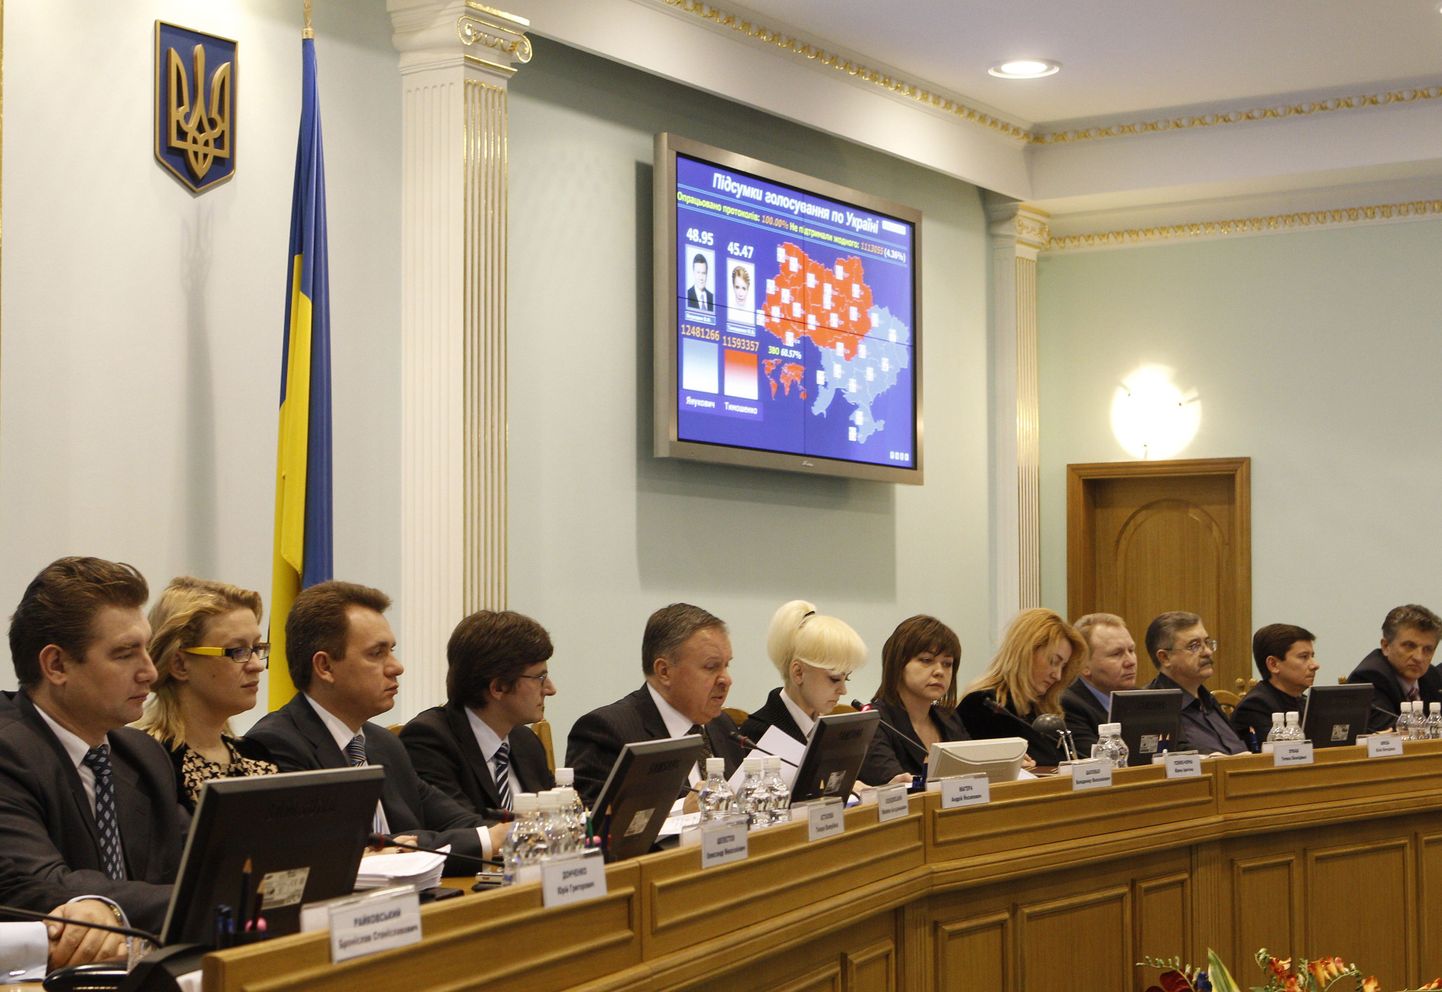 Ukraina keskvalimiskomisjon kuulutas välja presidendivalimiste tulemused, mis kajastuvad piltlikult ka seinale paigaldatud ekraanil.